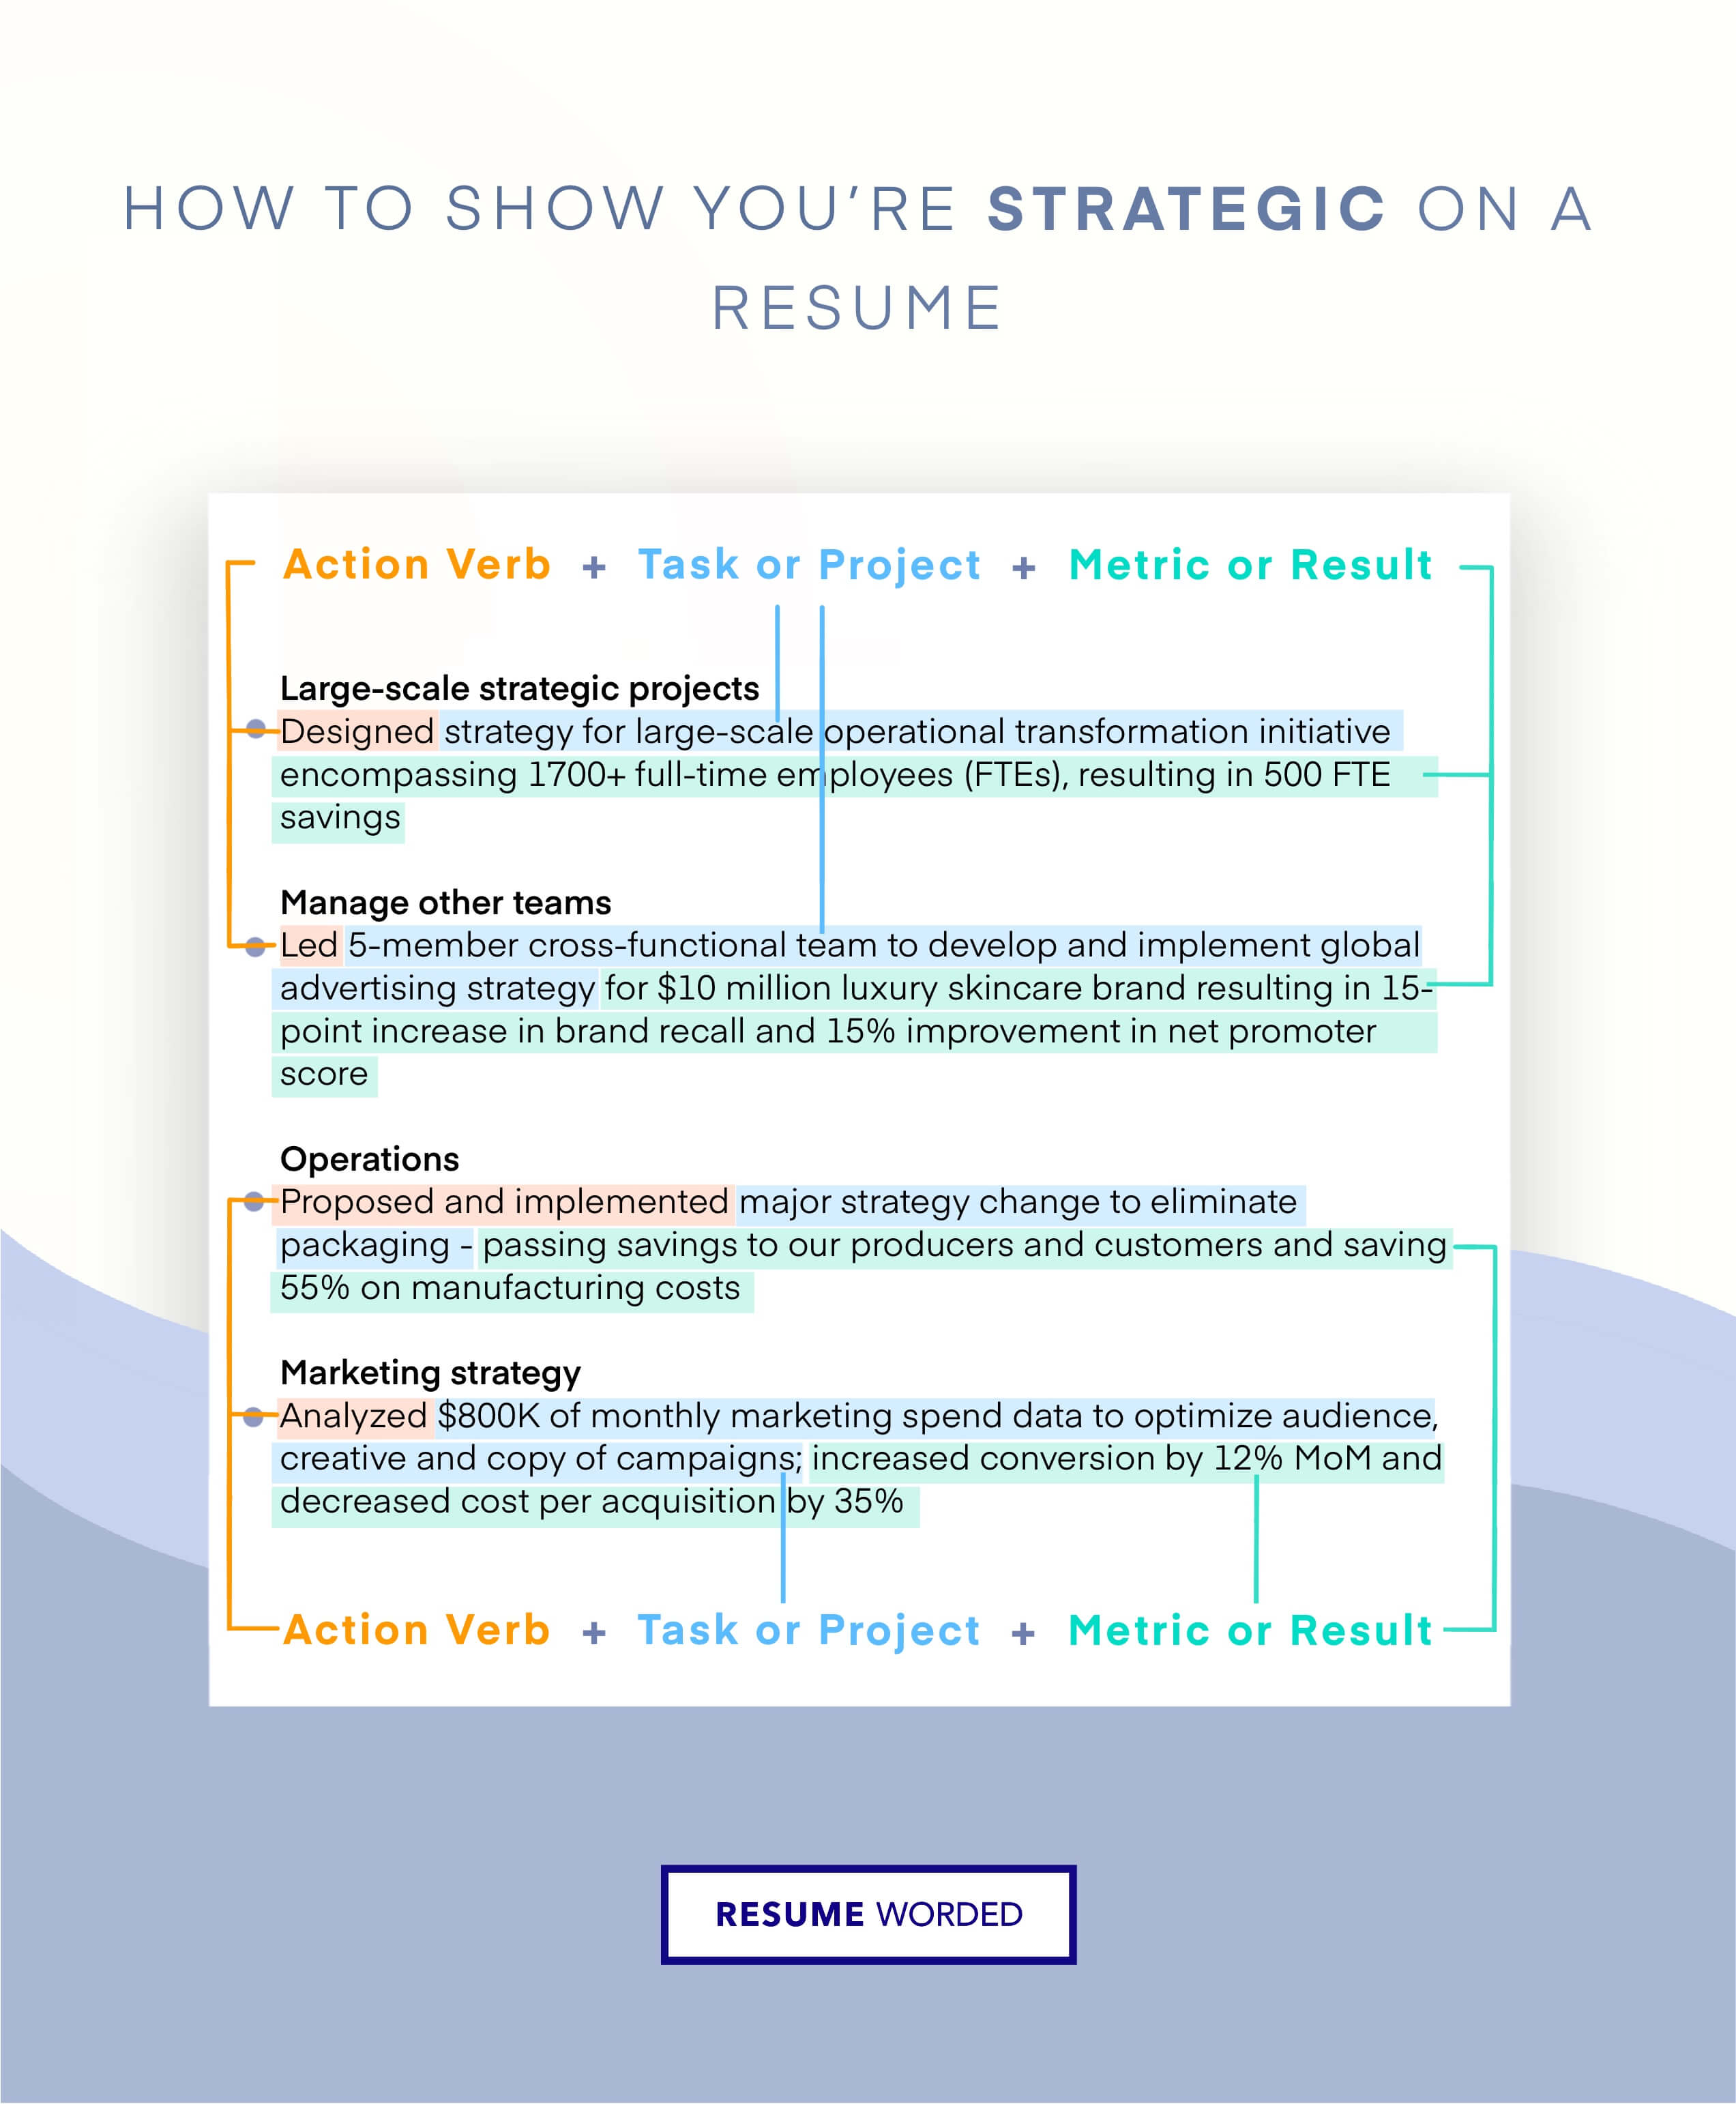 Showcase strategic thinking - Business Development Executive Resume